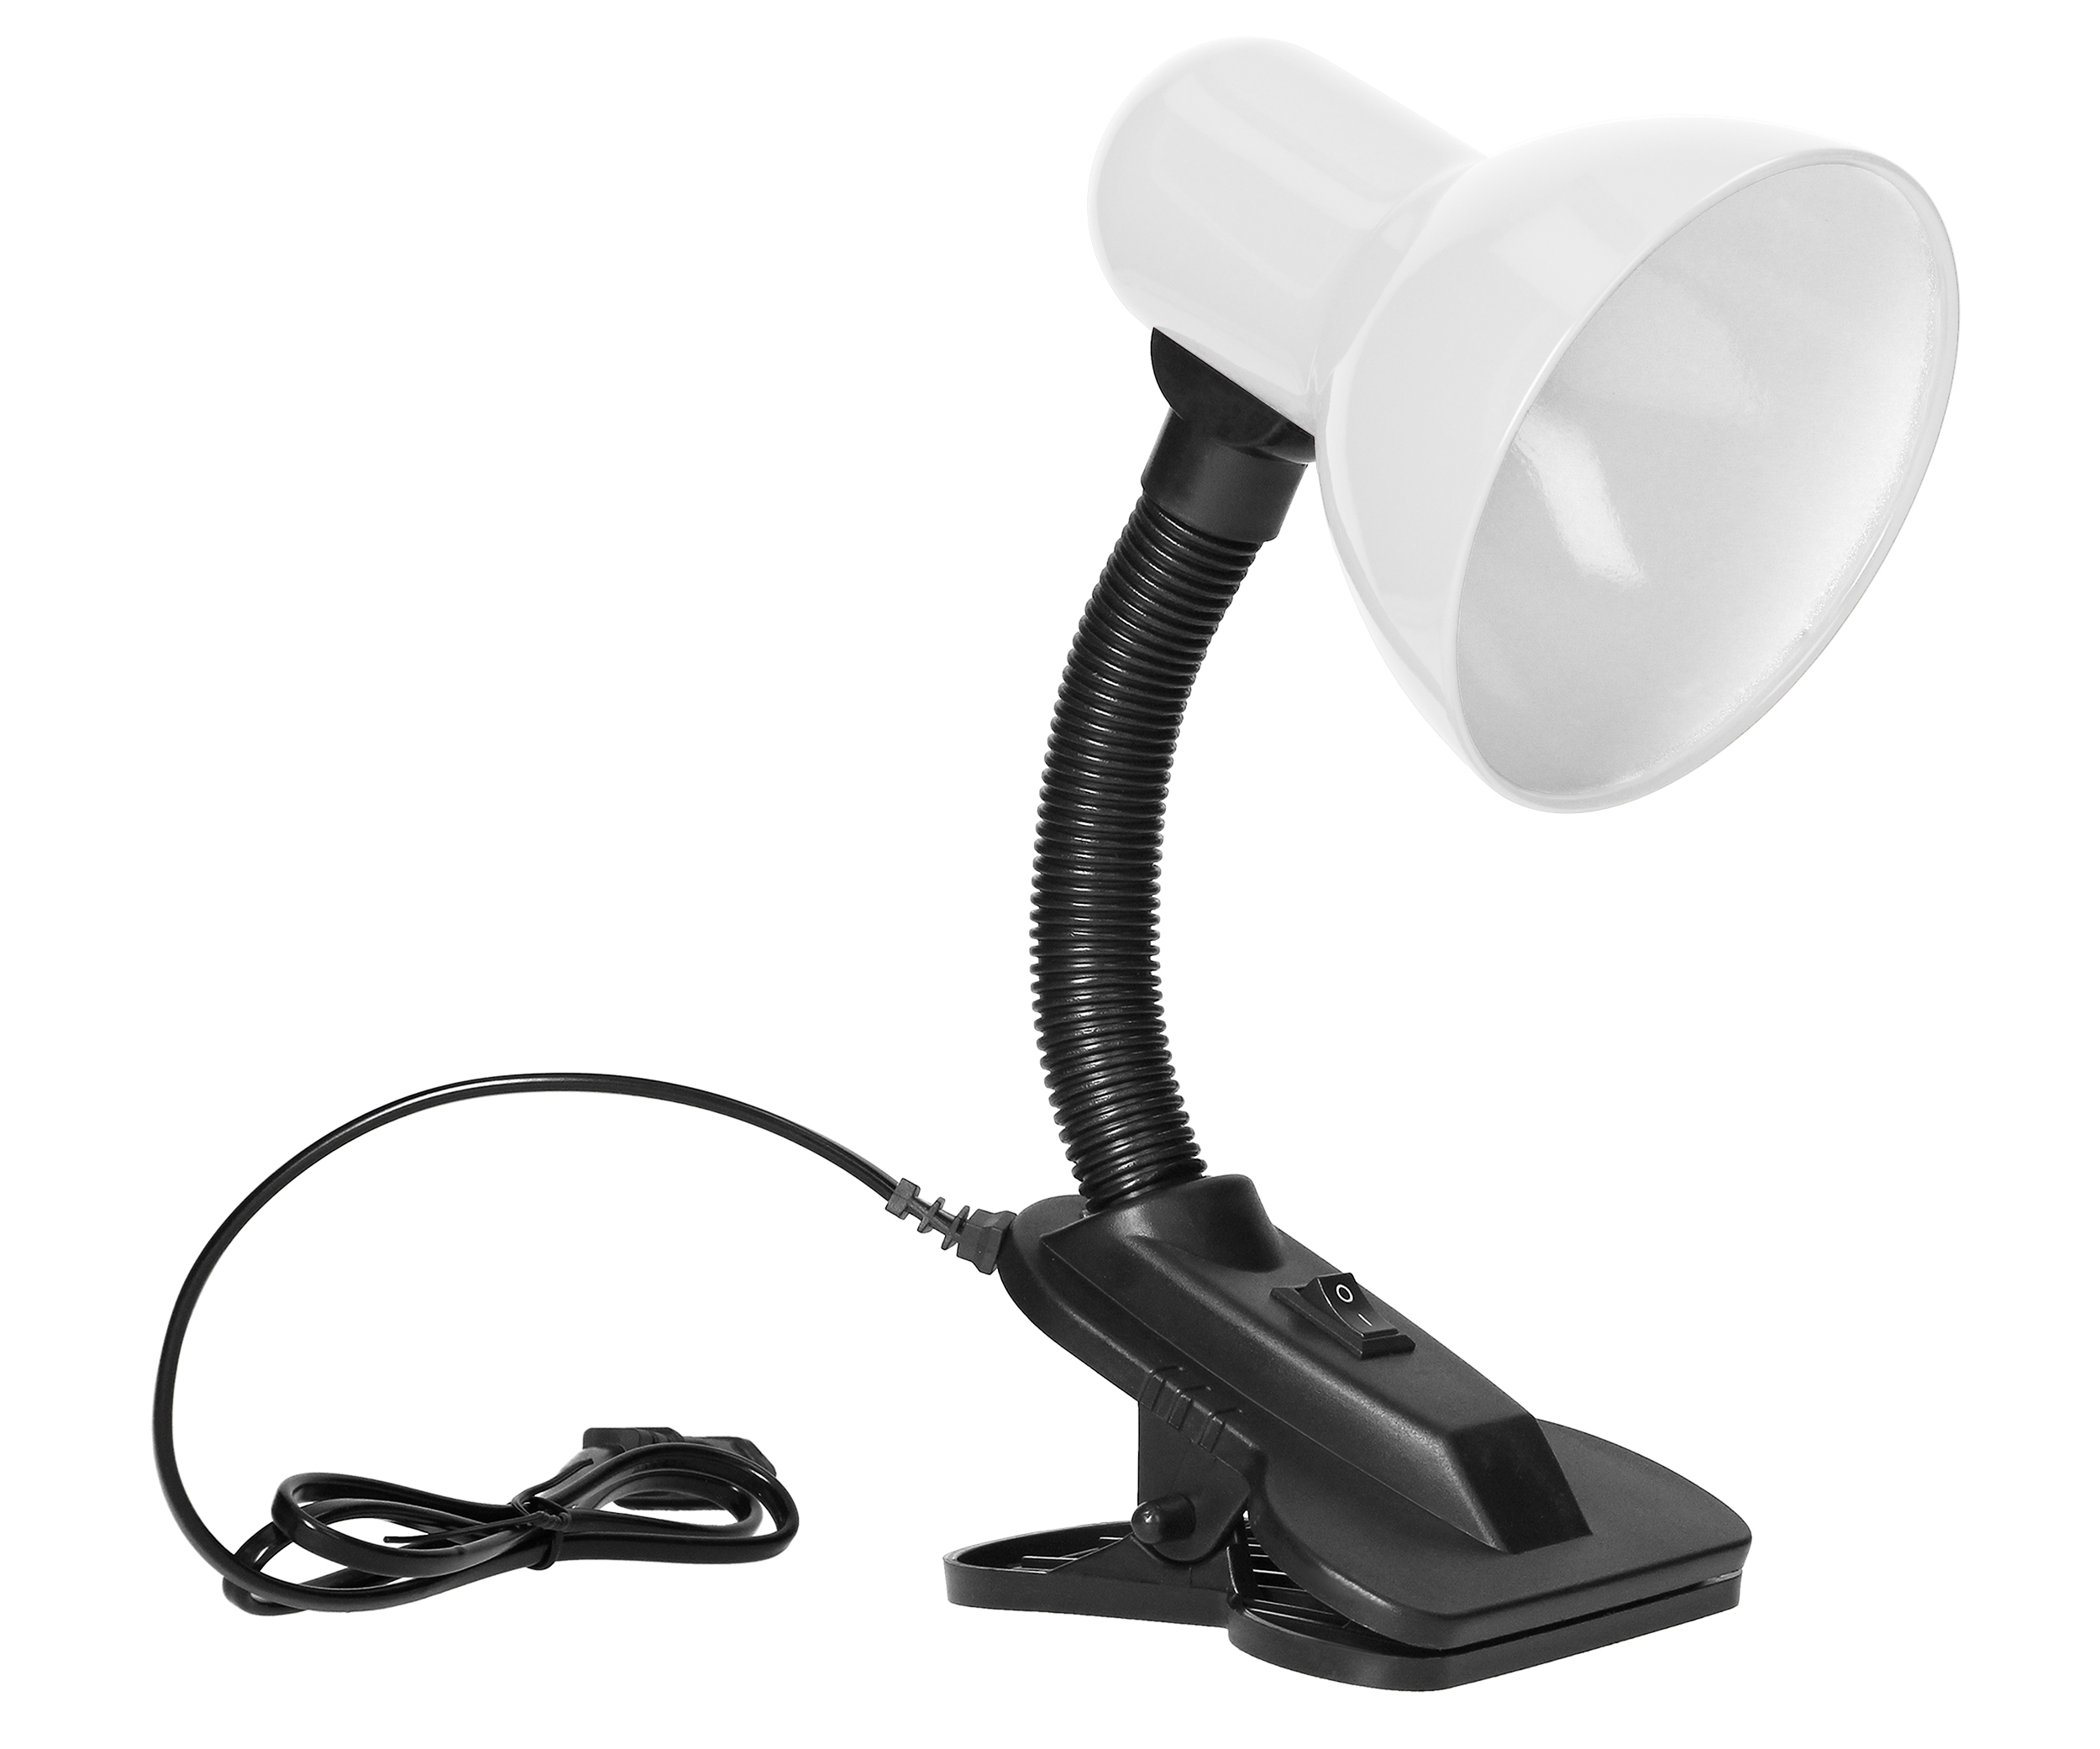 Lampa de birou VIRONE LATSA DL-3/W, E27, 40 W, IP20, brat flexibil cu clema, cablu 1 m, otel + plastic, negru/alb